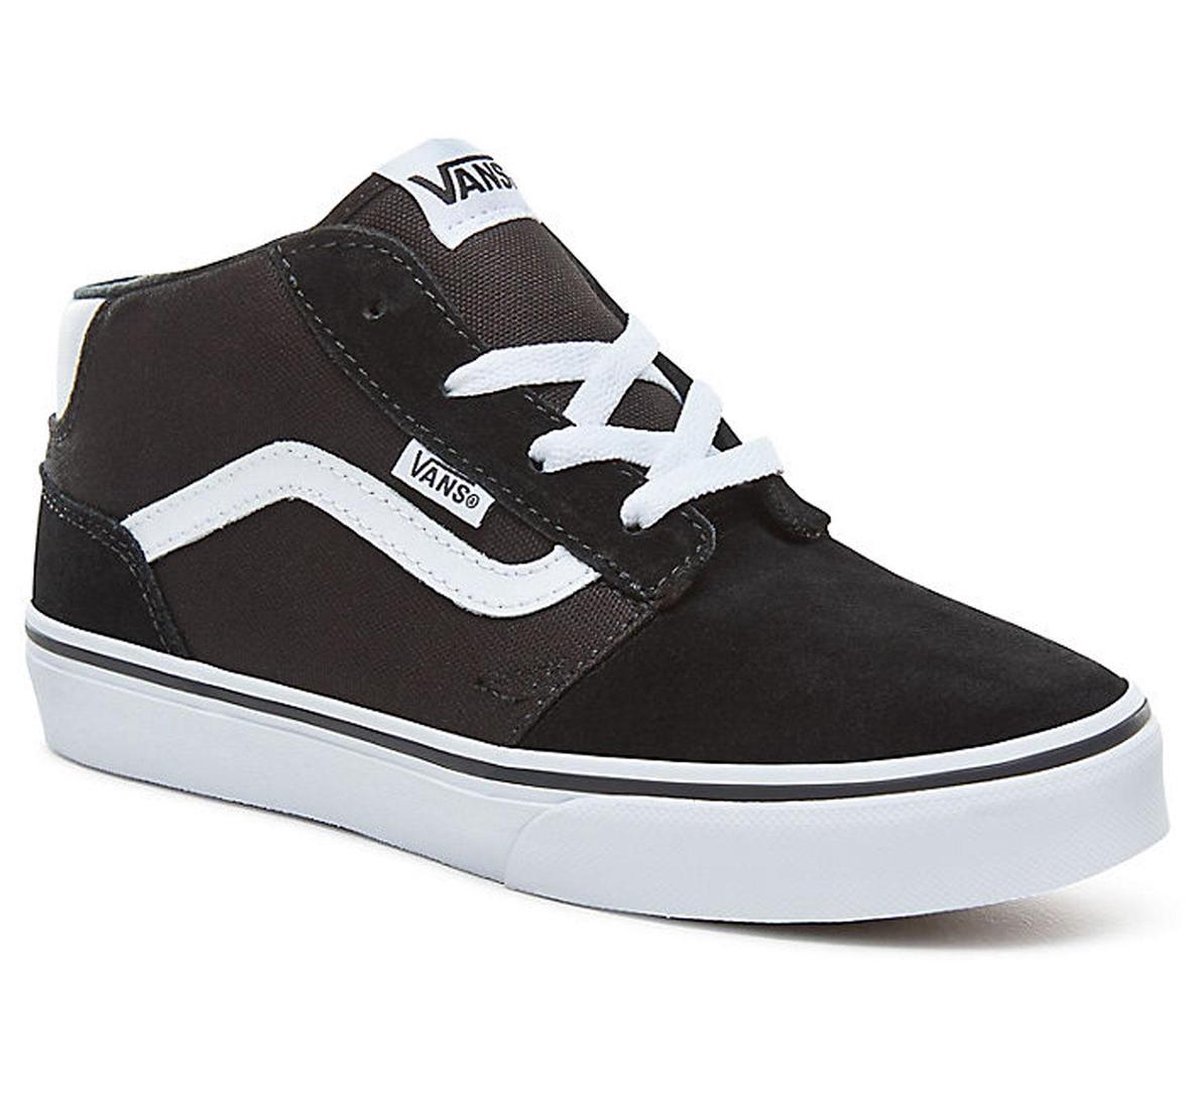 Vans Chapman Mid Sneakers - Maat 38.5 - Unisex - zwart/wit | bol.com